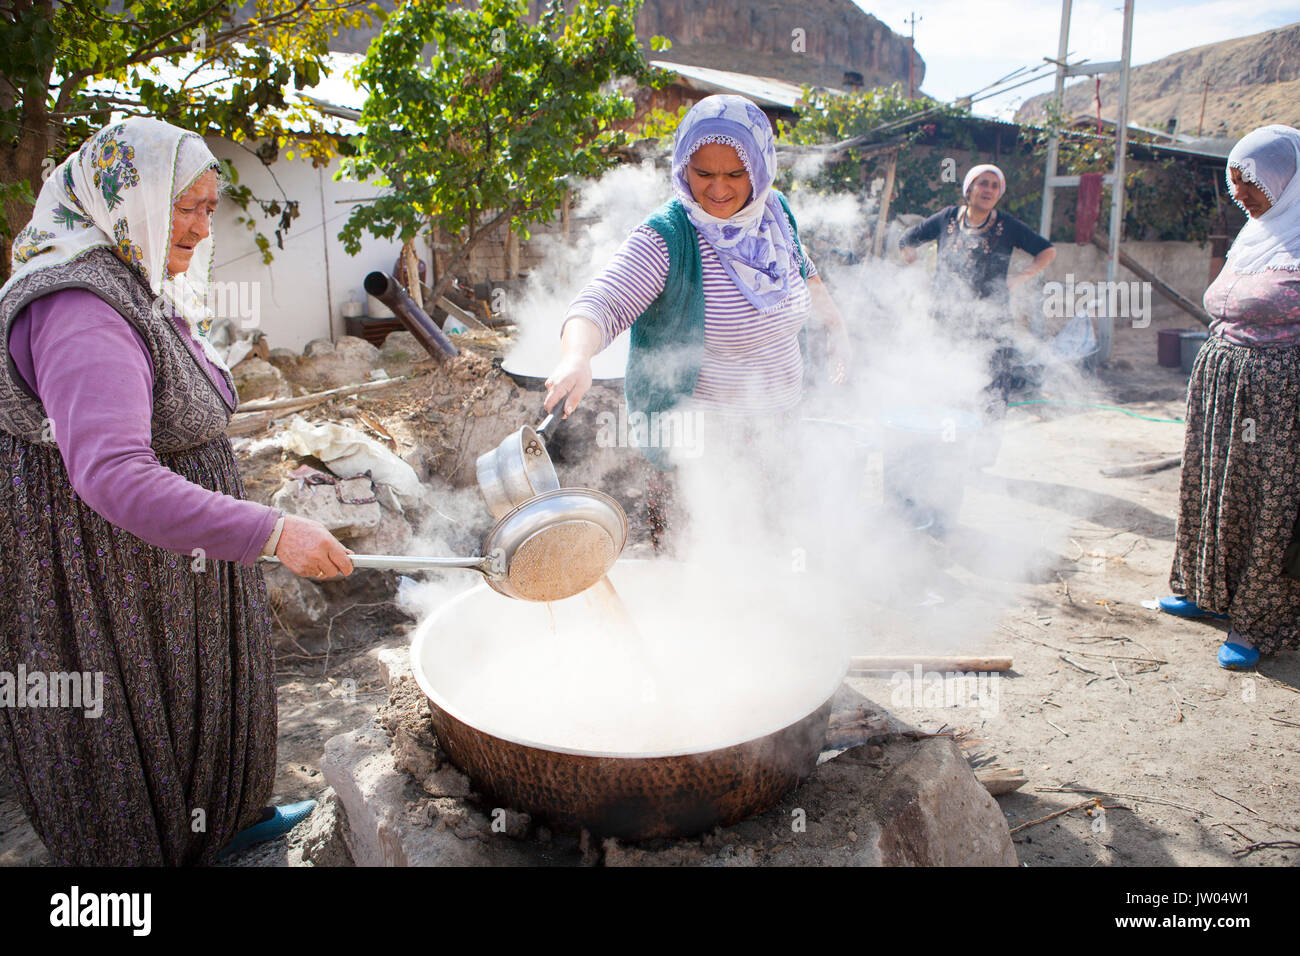 Le donne turche stanno rendendo Pekmez sulle strade della Cappadocia. Pekmez è una melassa-come sciroppo ottenuto dopo la condensazione succhi di frutta deve soprattutto uva mediante ebollizione. È usato come uno sciroppo o miscelato con tahini per colazione. Foto Stock